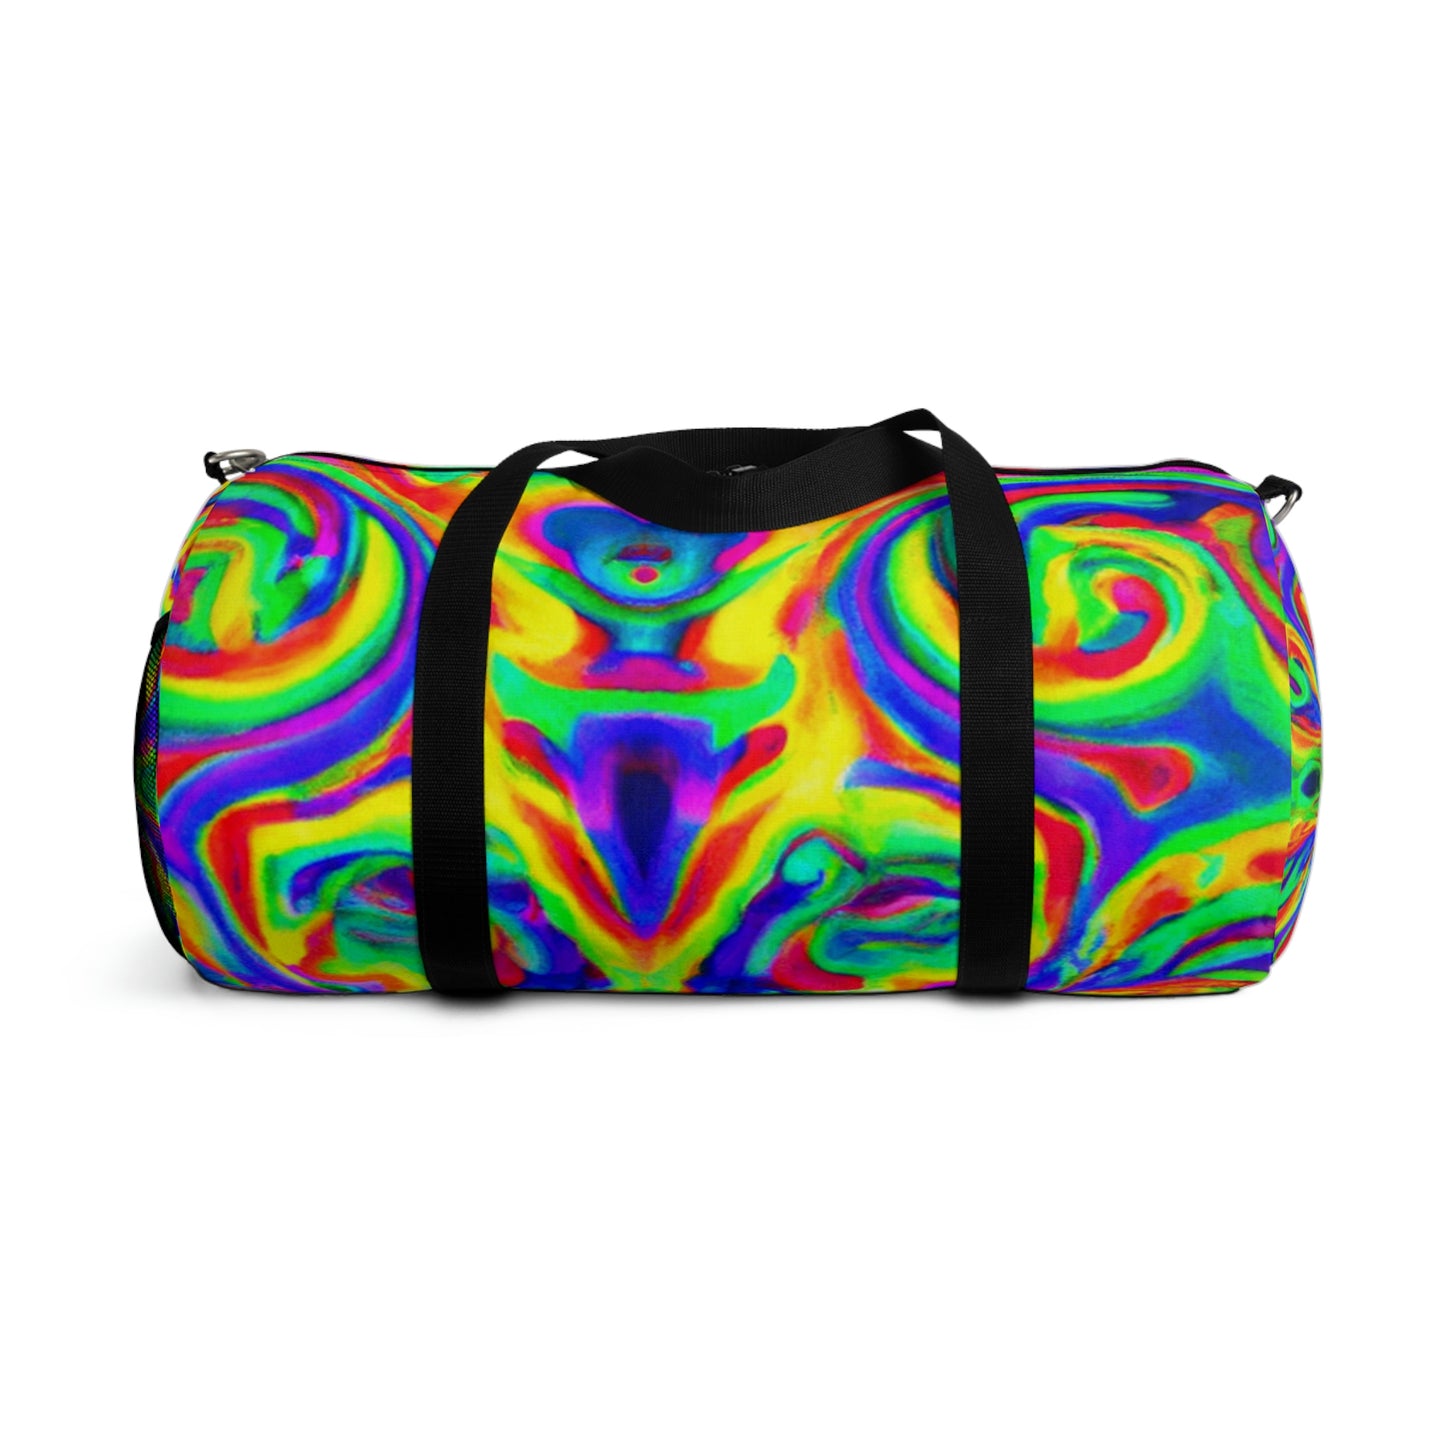 VeraLuxe - Psychedelic Duffel Bag